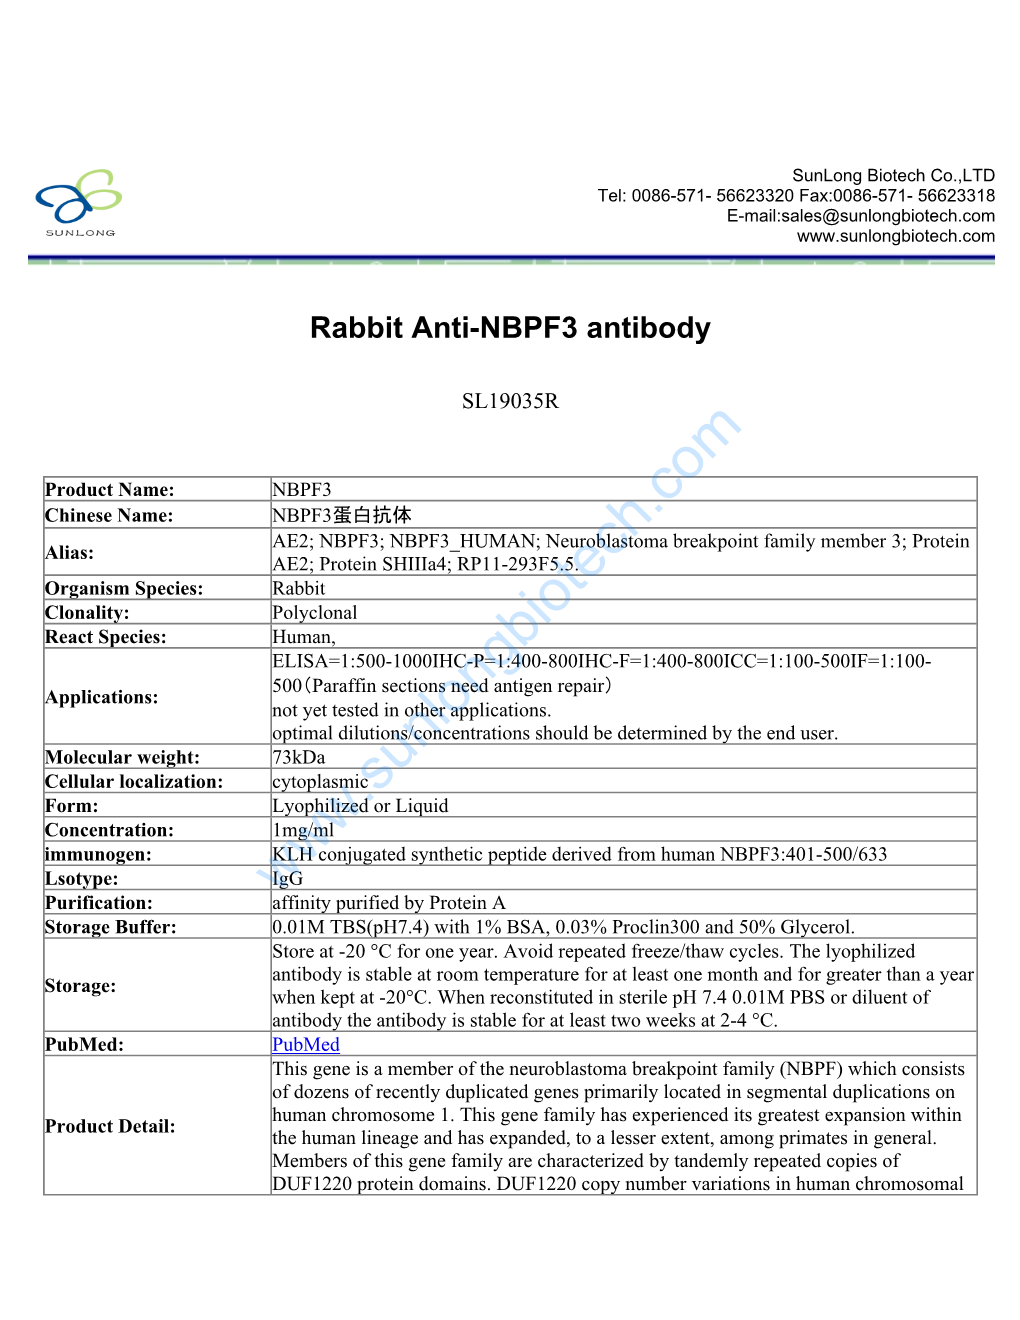 Rabbit Anti-NBPF3 Antibody-SL19035R